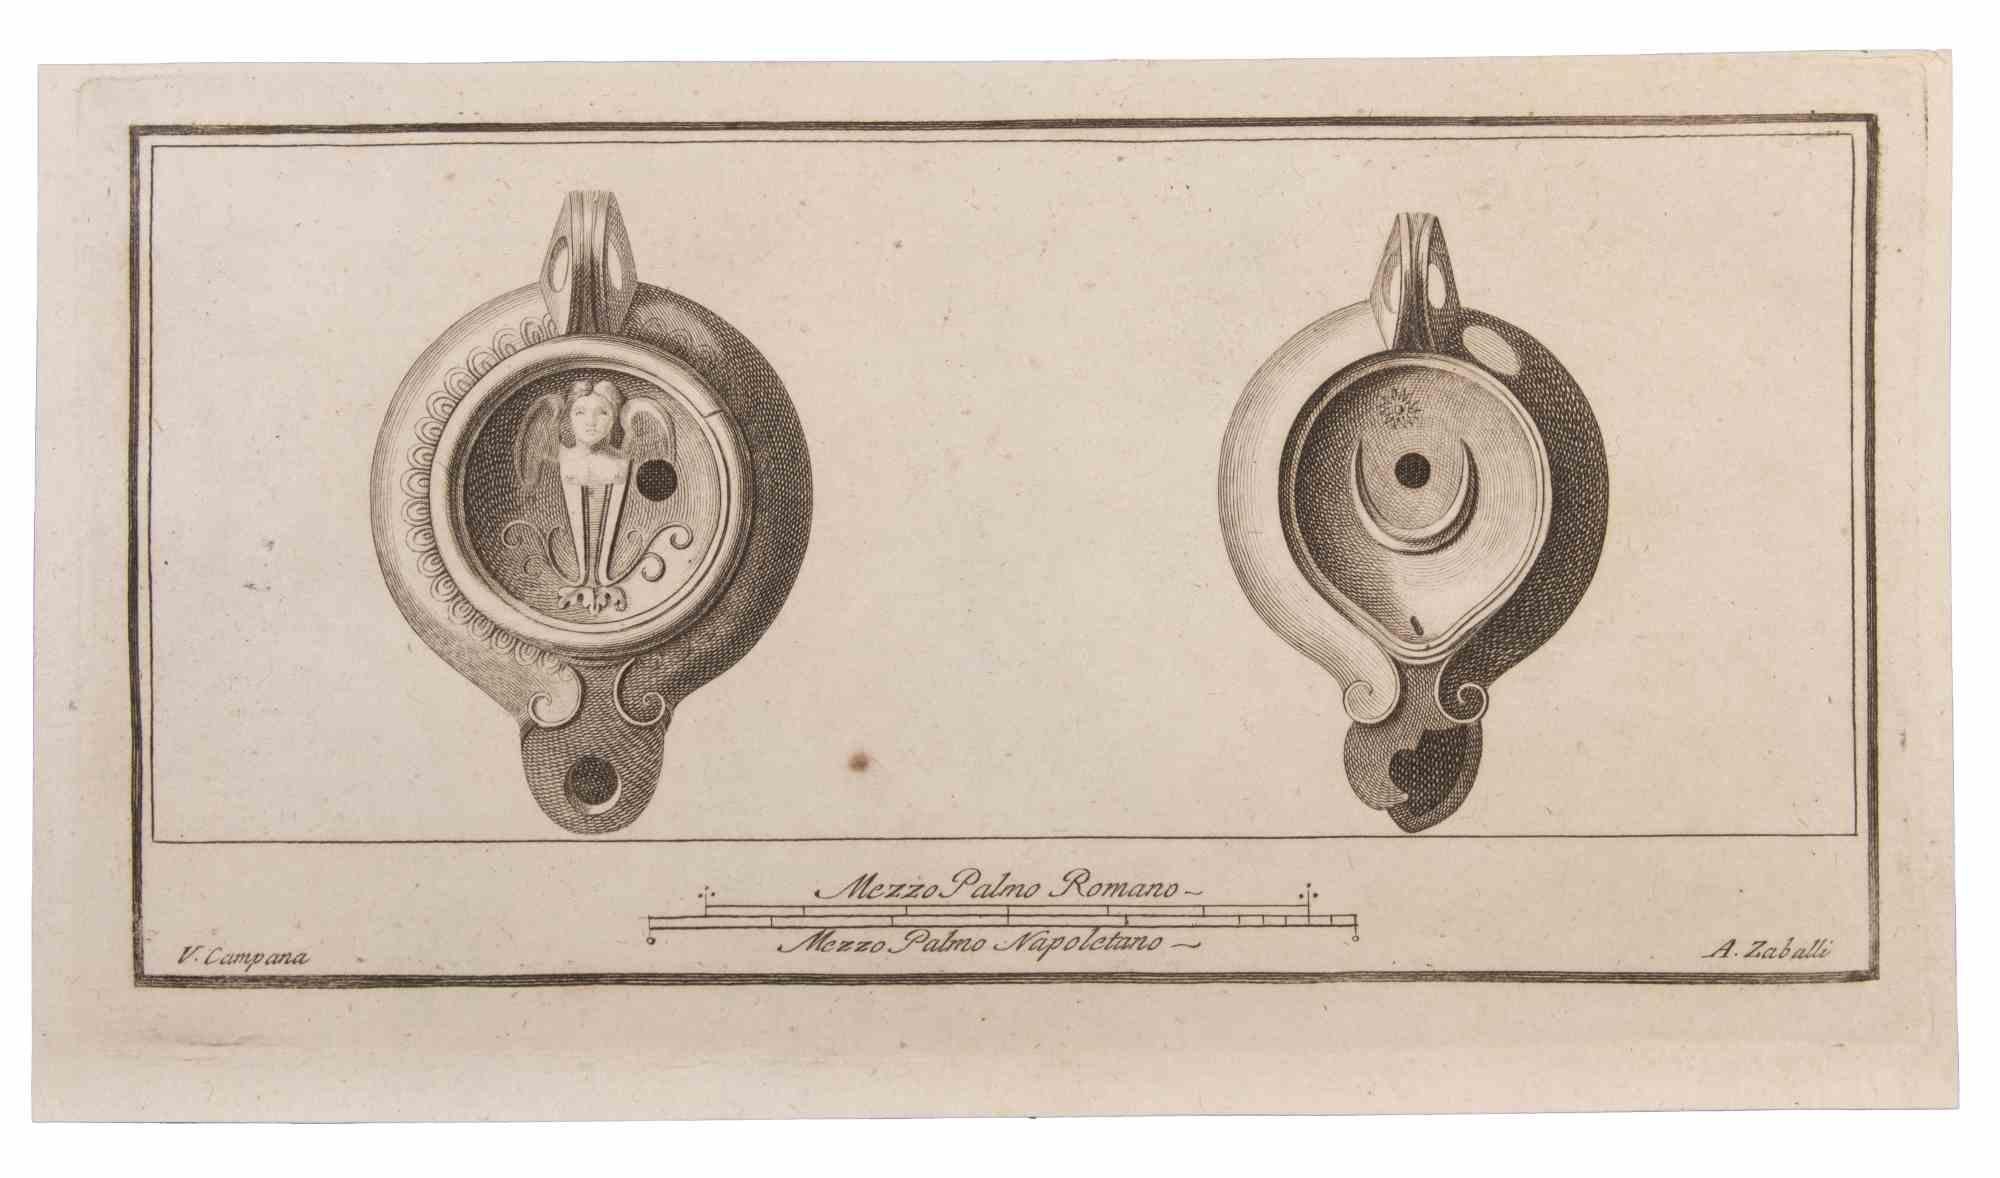 Lampes à huile est une gravure réalisée par Vincenzo Campana (1750-1787).

La gravure appartient à la suite d'estampes "Antiquités d'Herculanum exposées" (titre original : "Le Antichità di Ercolano Esposte"), un volume de huit gravures des